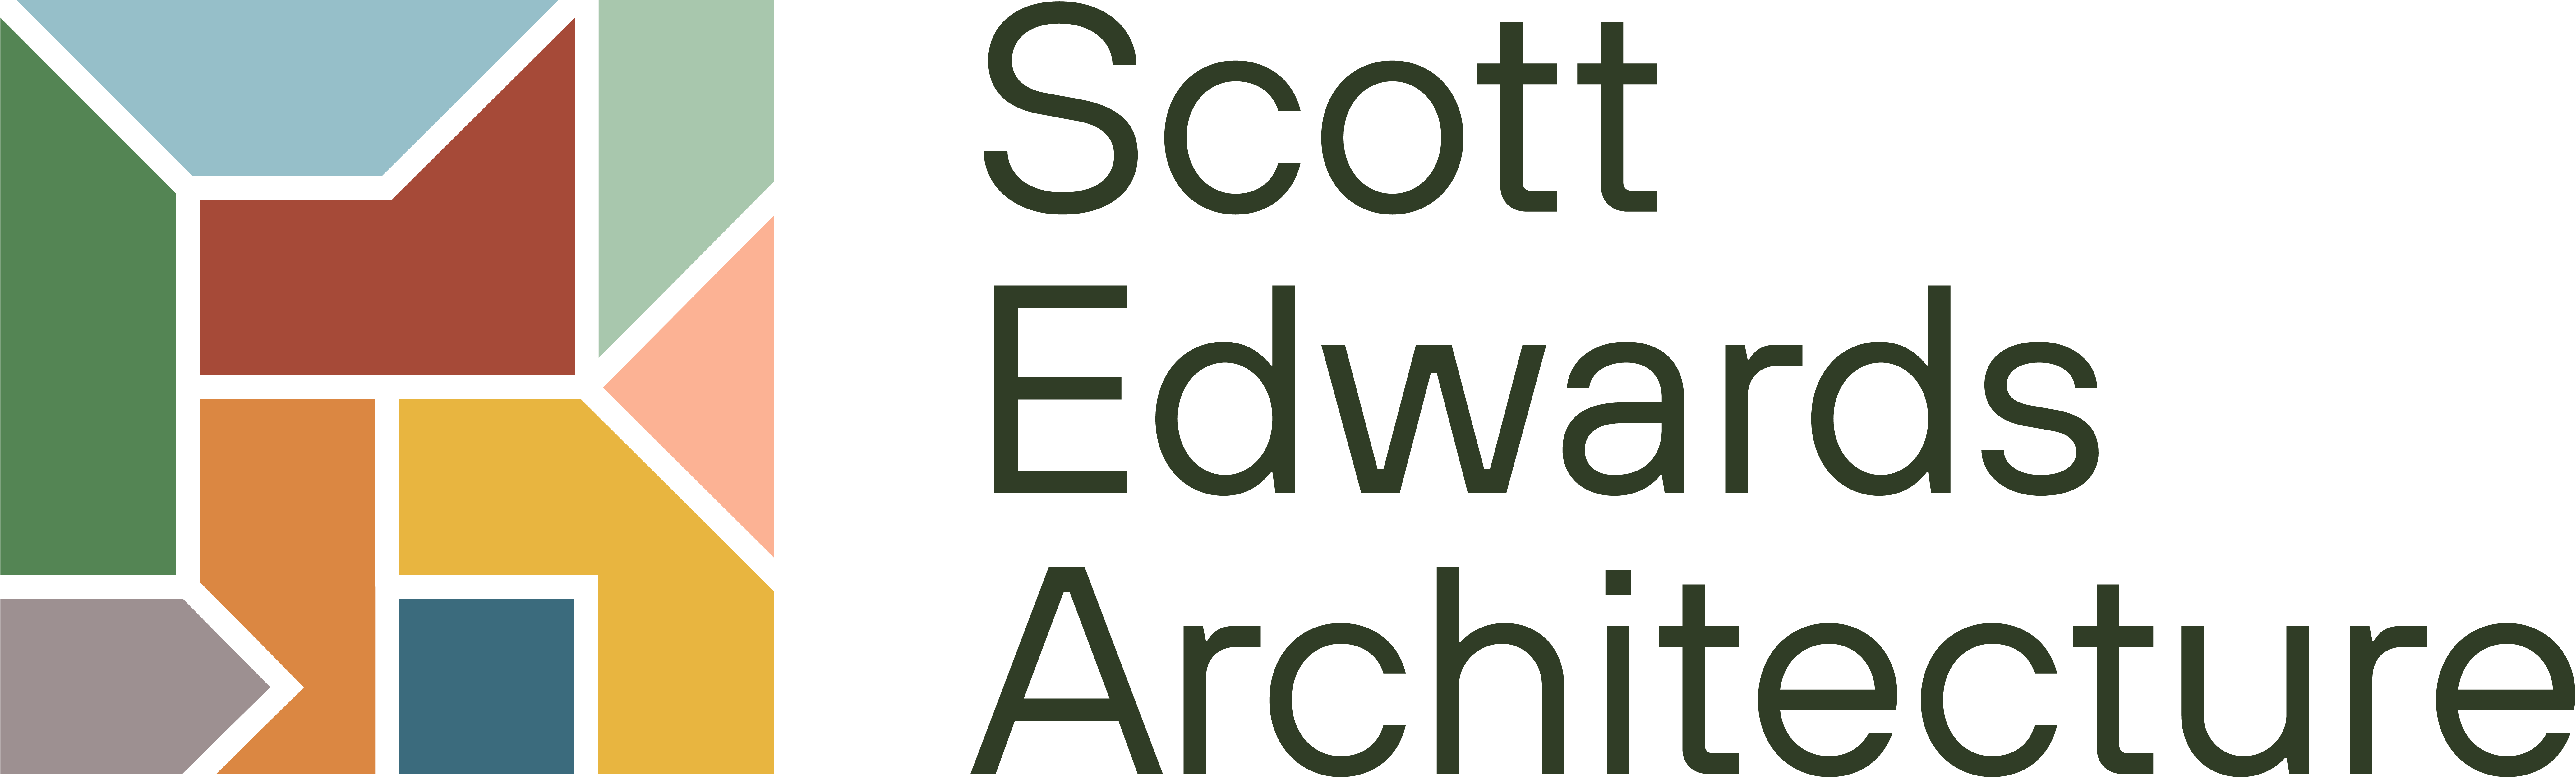 Scott Edwards Architecture logo